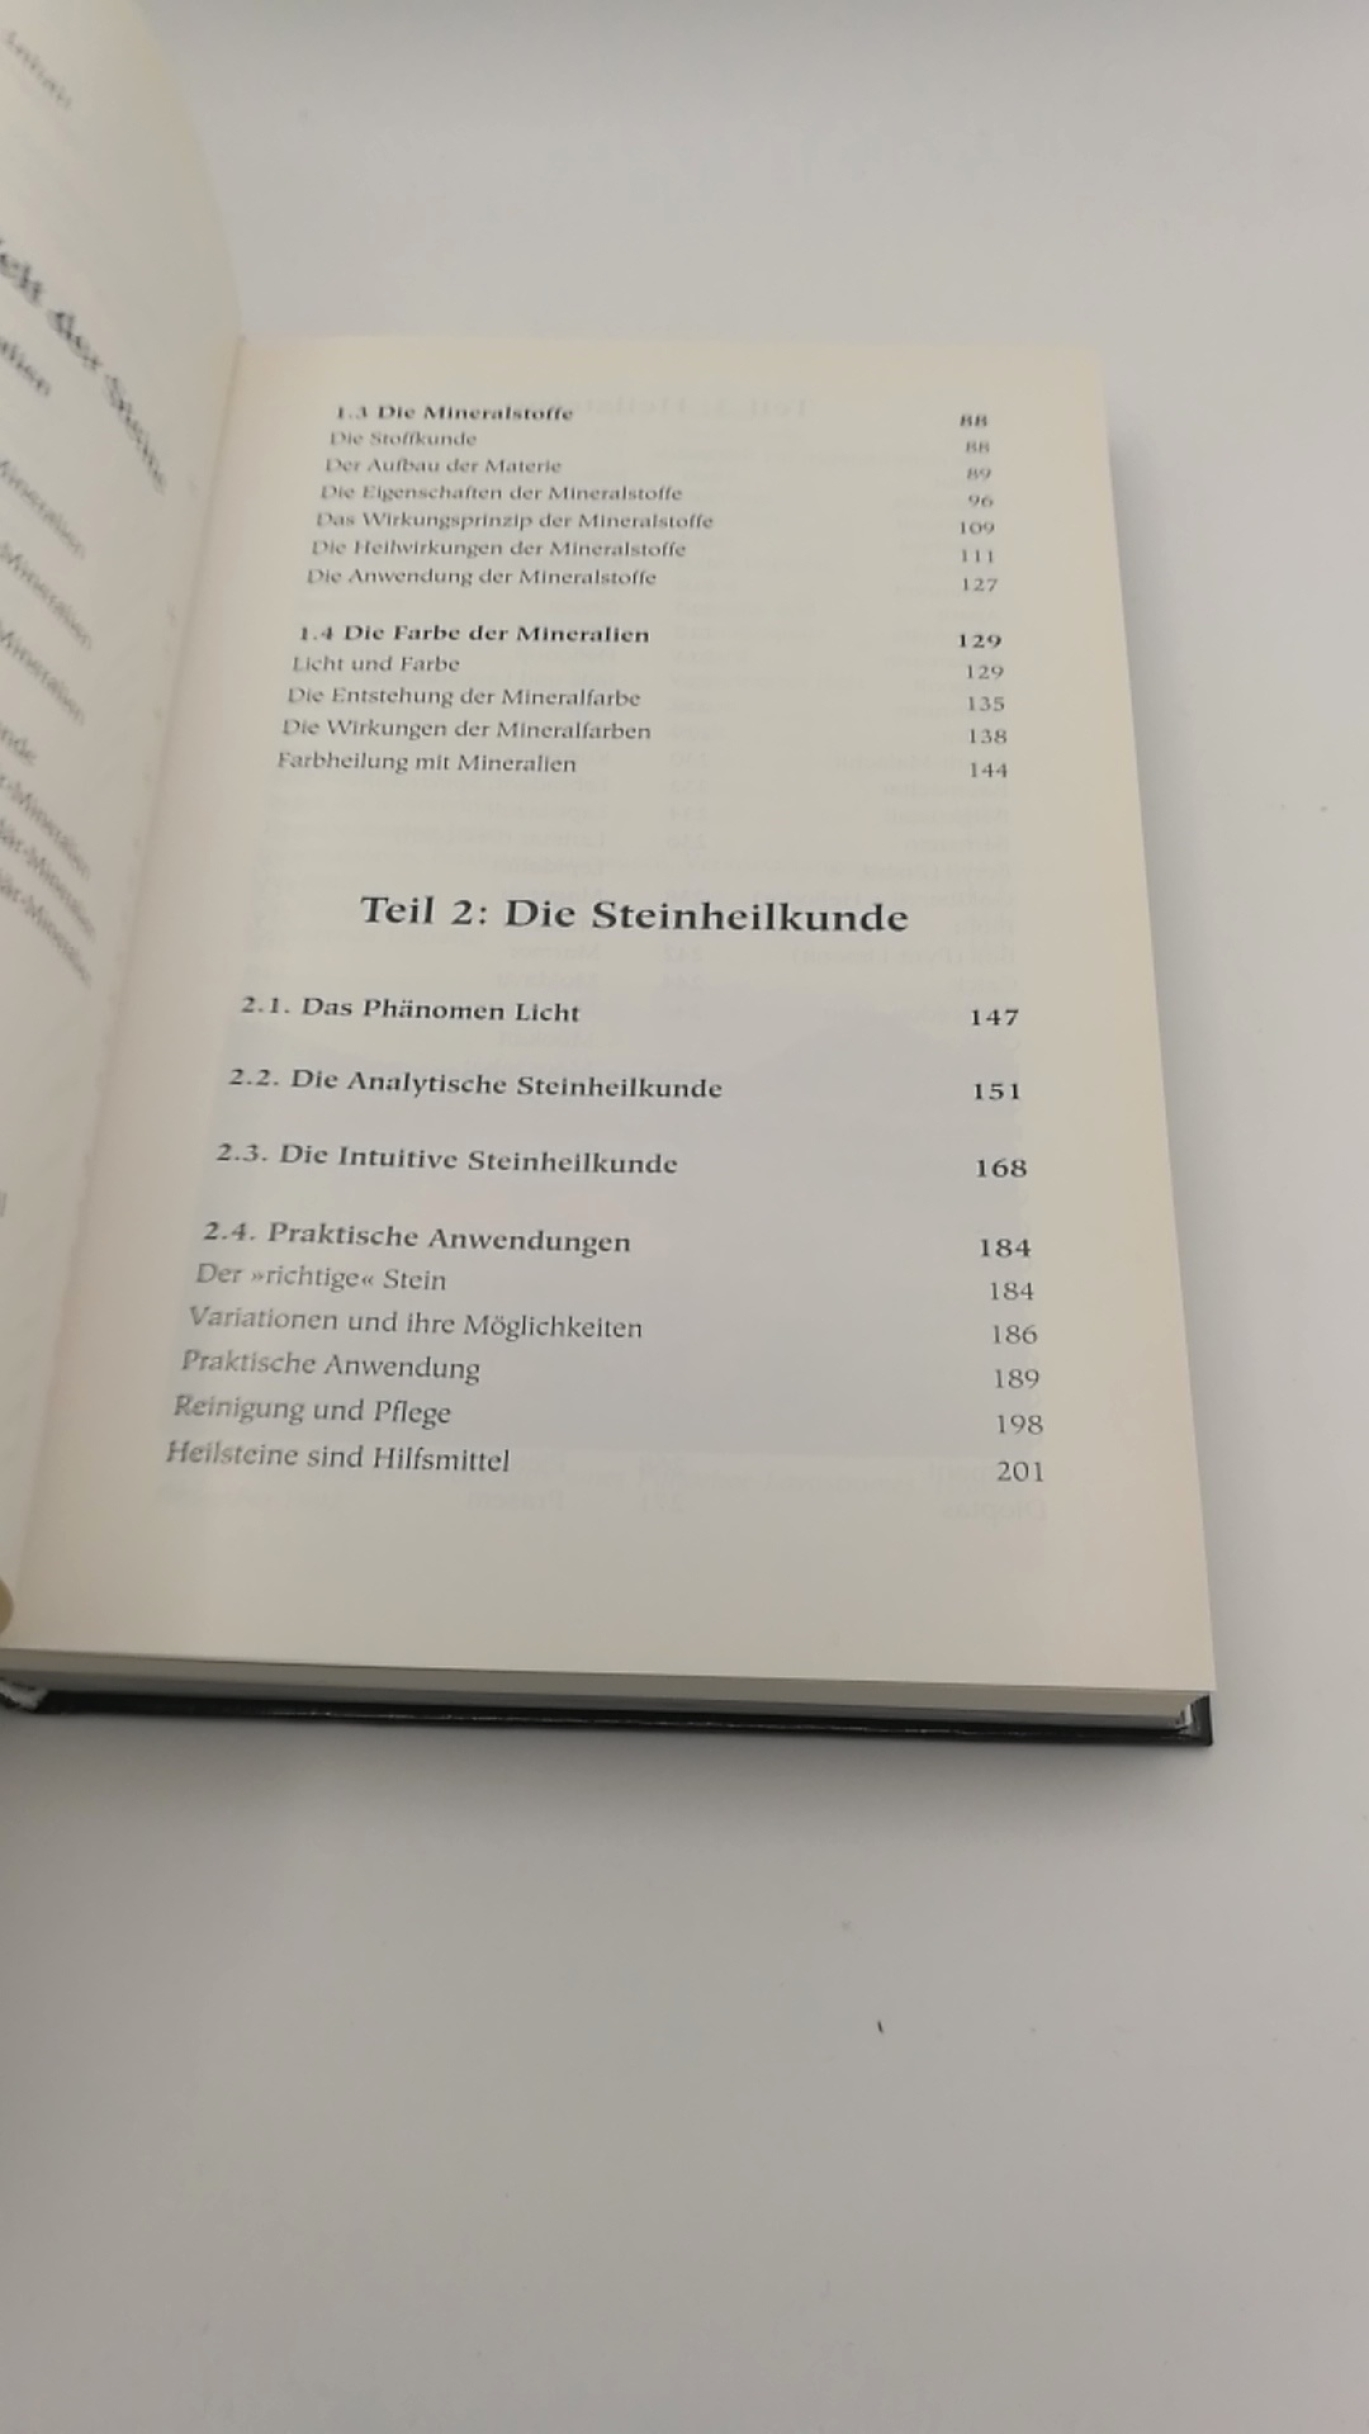 Gienger, Michael: Die Steinheilkunde Ein Handbuch